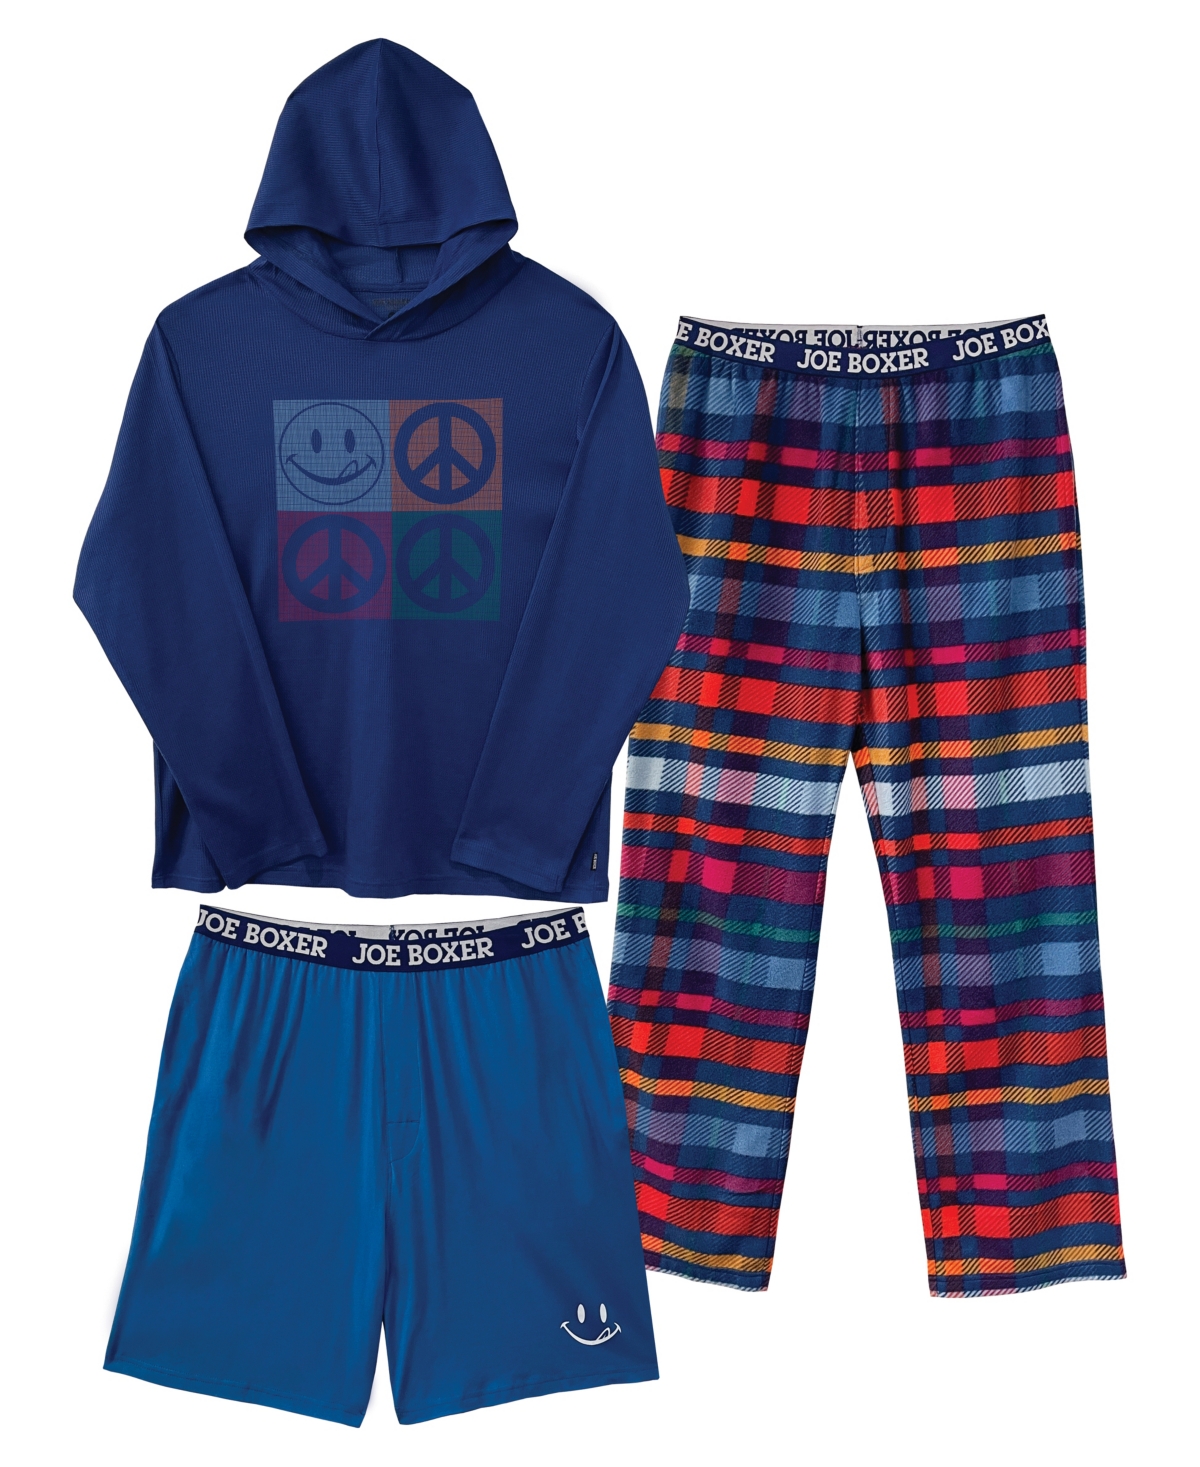 Men's Hoodie Lounge Hoodie, Shorts and Pants Gift, 3 Piece Set - Dark Blue